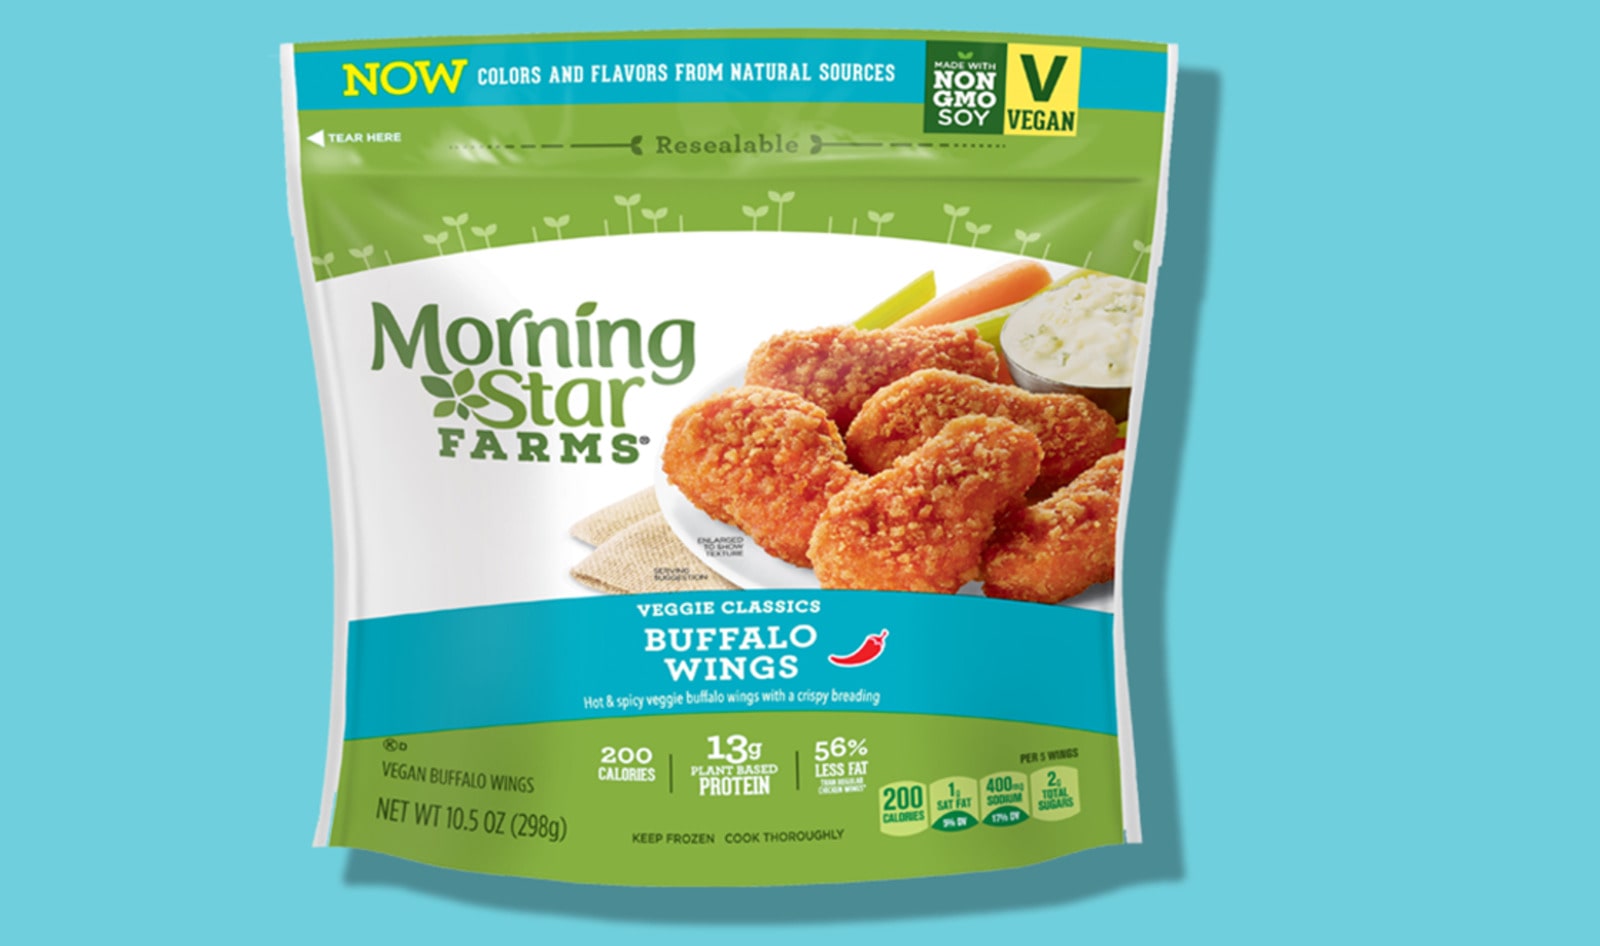 MorningStar Farms Veganizes “Chik’N” Line